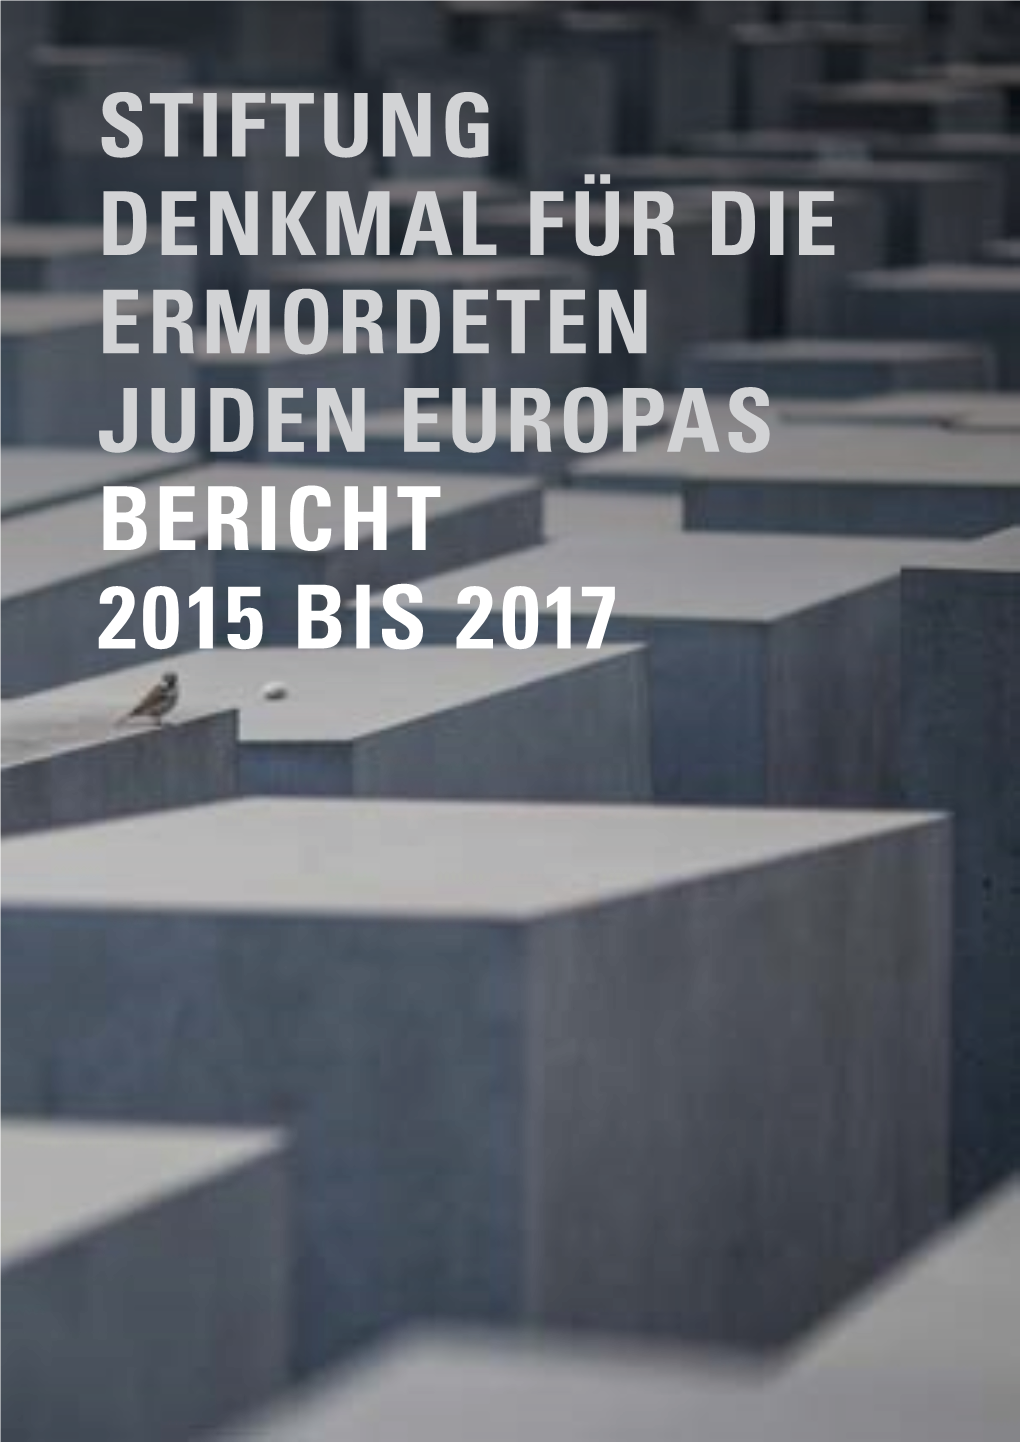 Bericht 2015 Bis 2017 Stiftung Denkmal Für Die Ermordeten Juden Europas Bericht 2015 Bis 2017